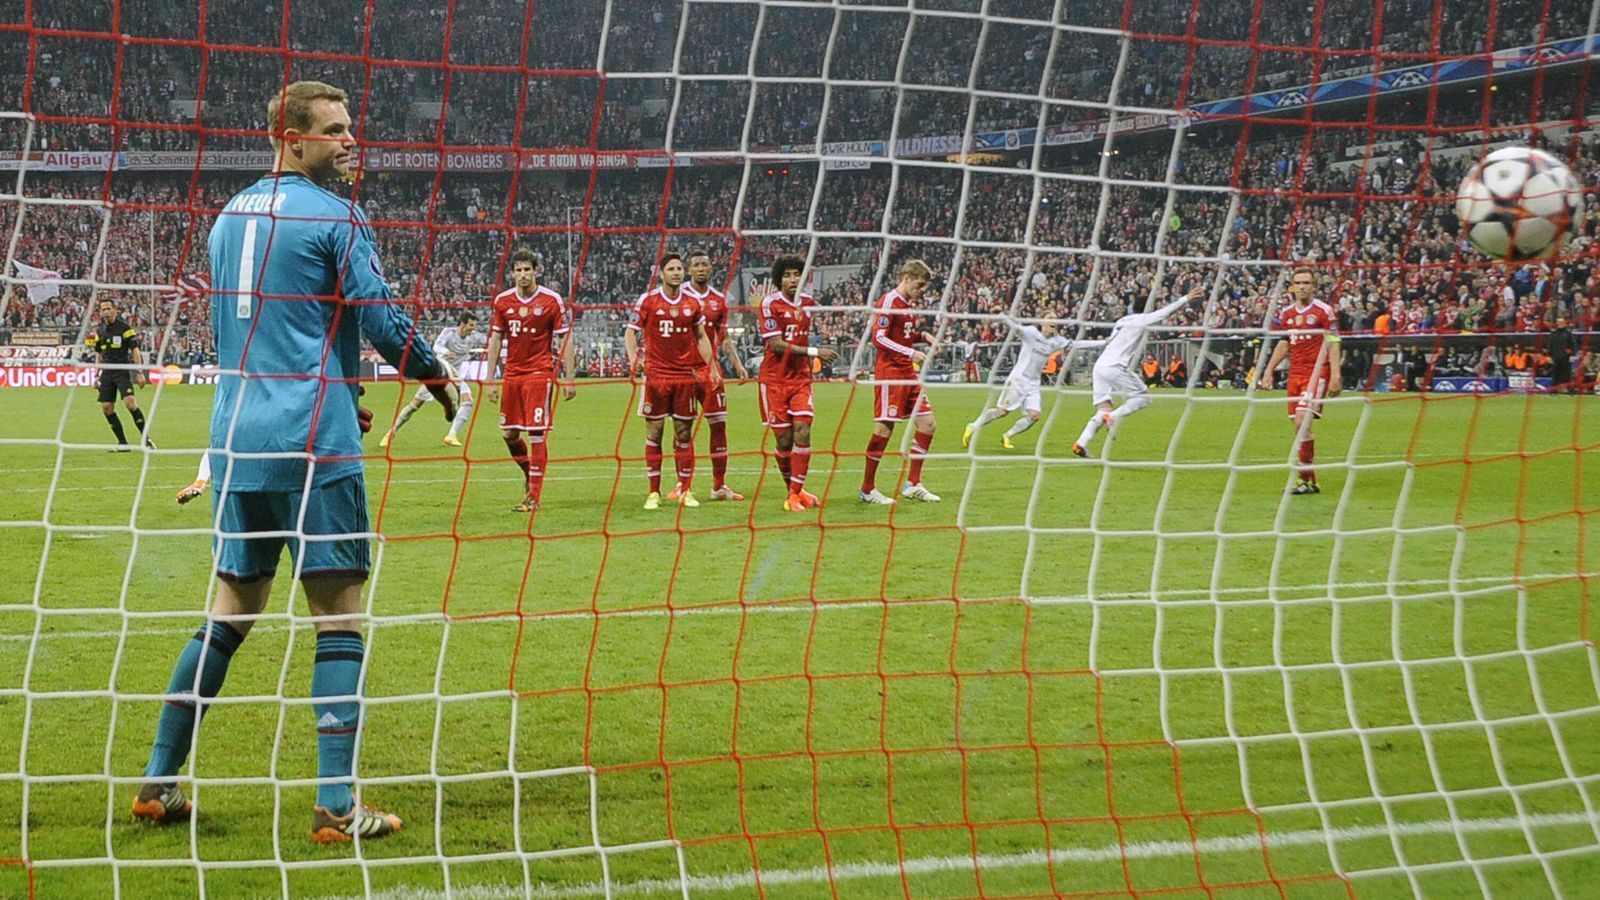 <strong>2013/2014, Halbfinale: FC Bayern München - Real Madrid 0:4 (nach 0:1)</strong><br>
                In der ersten Saison unter Pep Guardiola ging der FCB mit einer 0:1-Hypothek gegen Real Madrid ins Halbfinal-Rückspiel. Die Hoffnung auf eine Wende war aber nur von kurzer Dauer, bereits nach gut einer halben Stunde lagen die Bayern mit 0:3 zurück. Den Endstand besorgte Cristiano Ronaldo per Freistoß kurz vor Schluss. Es war Peps wohl größtes Coaching-Desaster als Bayern-Trainer, die Taktik bestimmten die Spieler, wie Lahm später verriet.